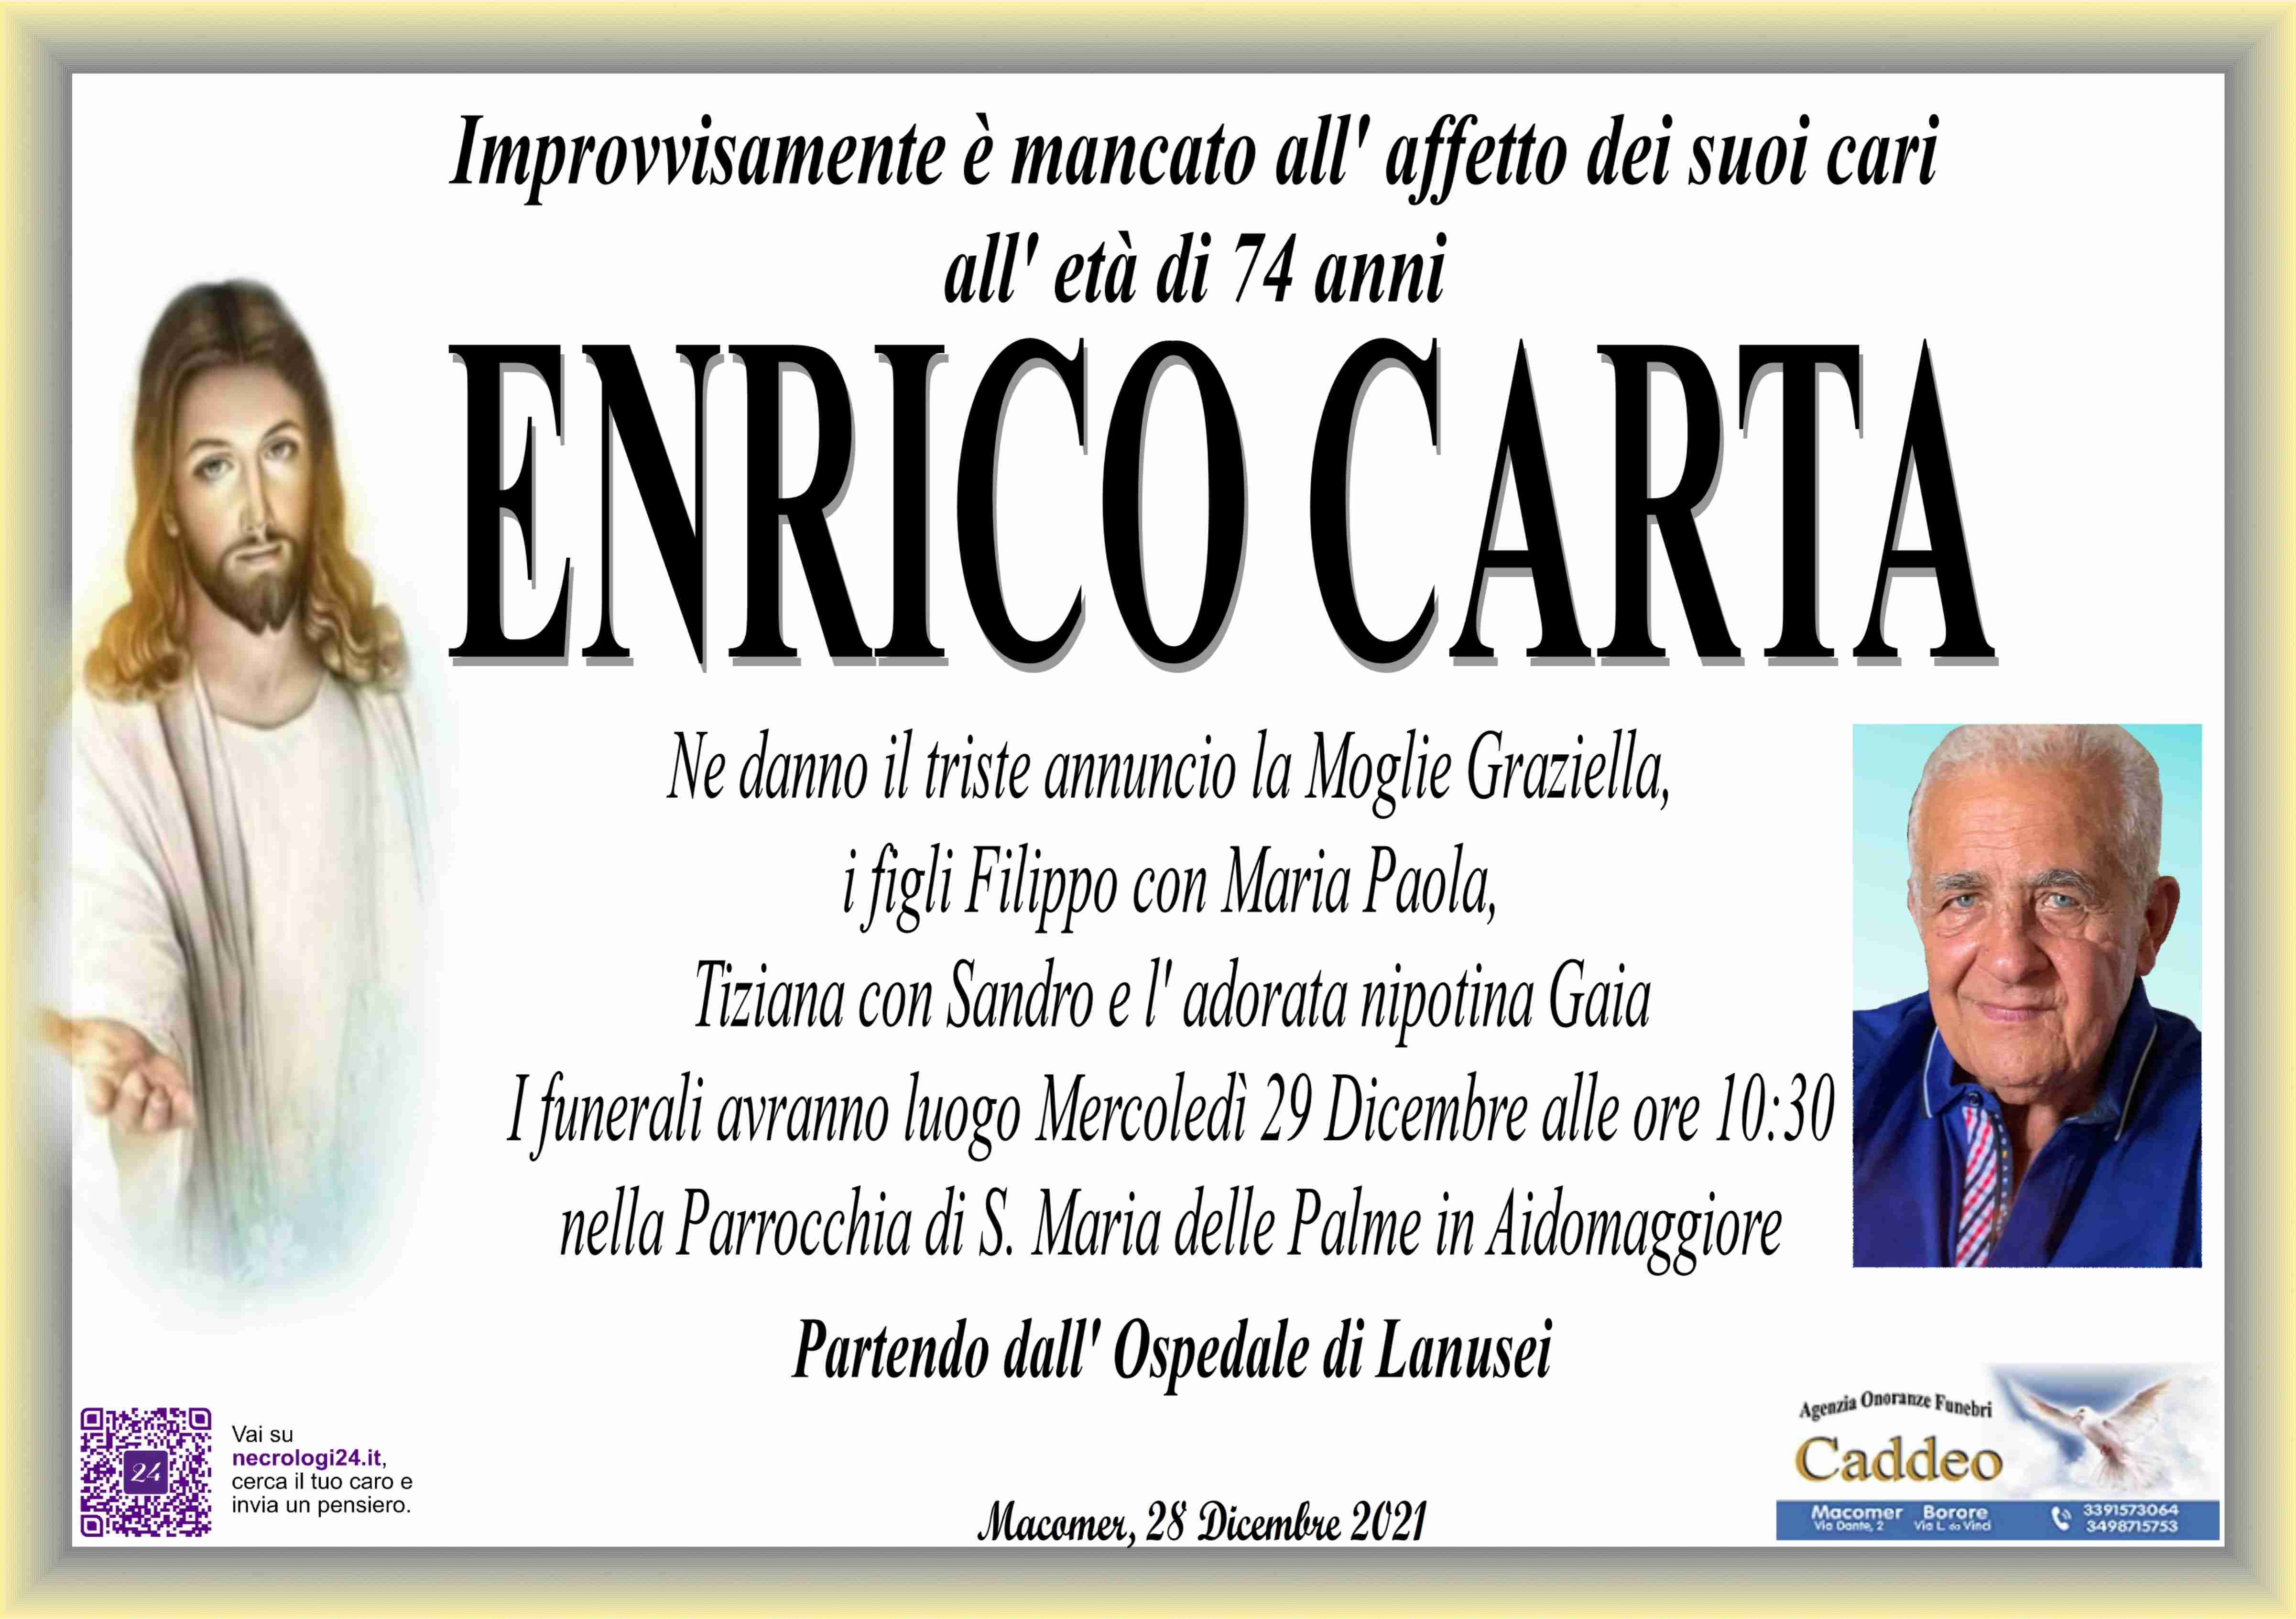 Enrico Carta